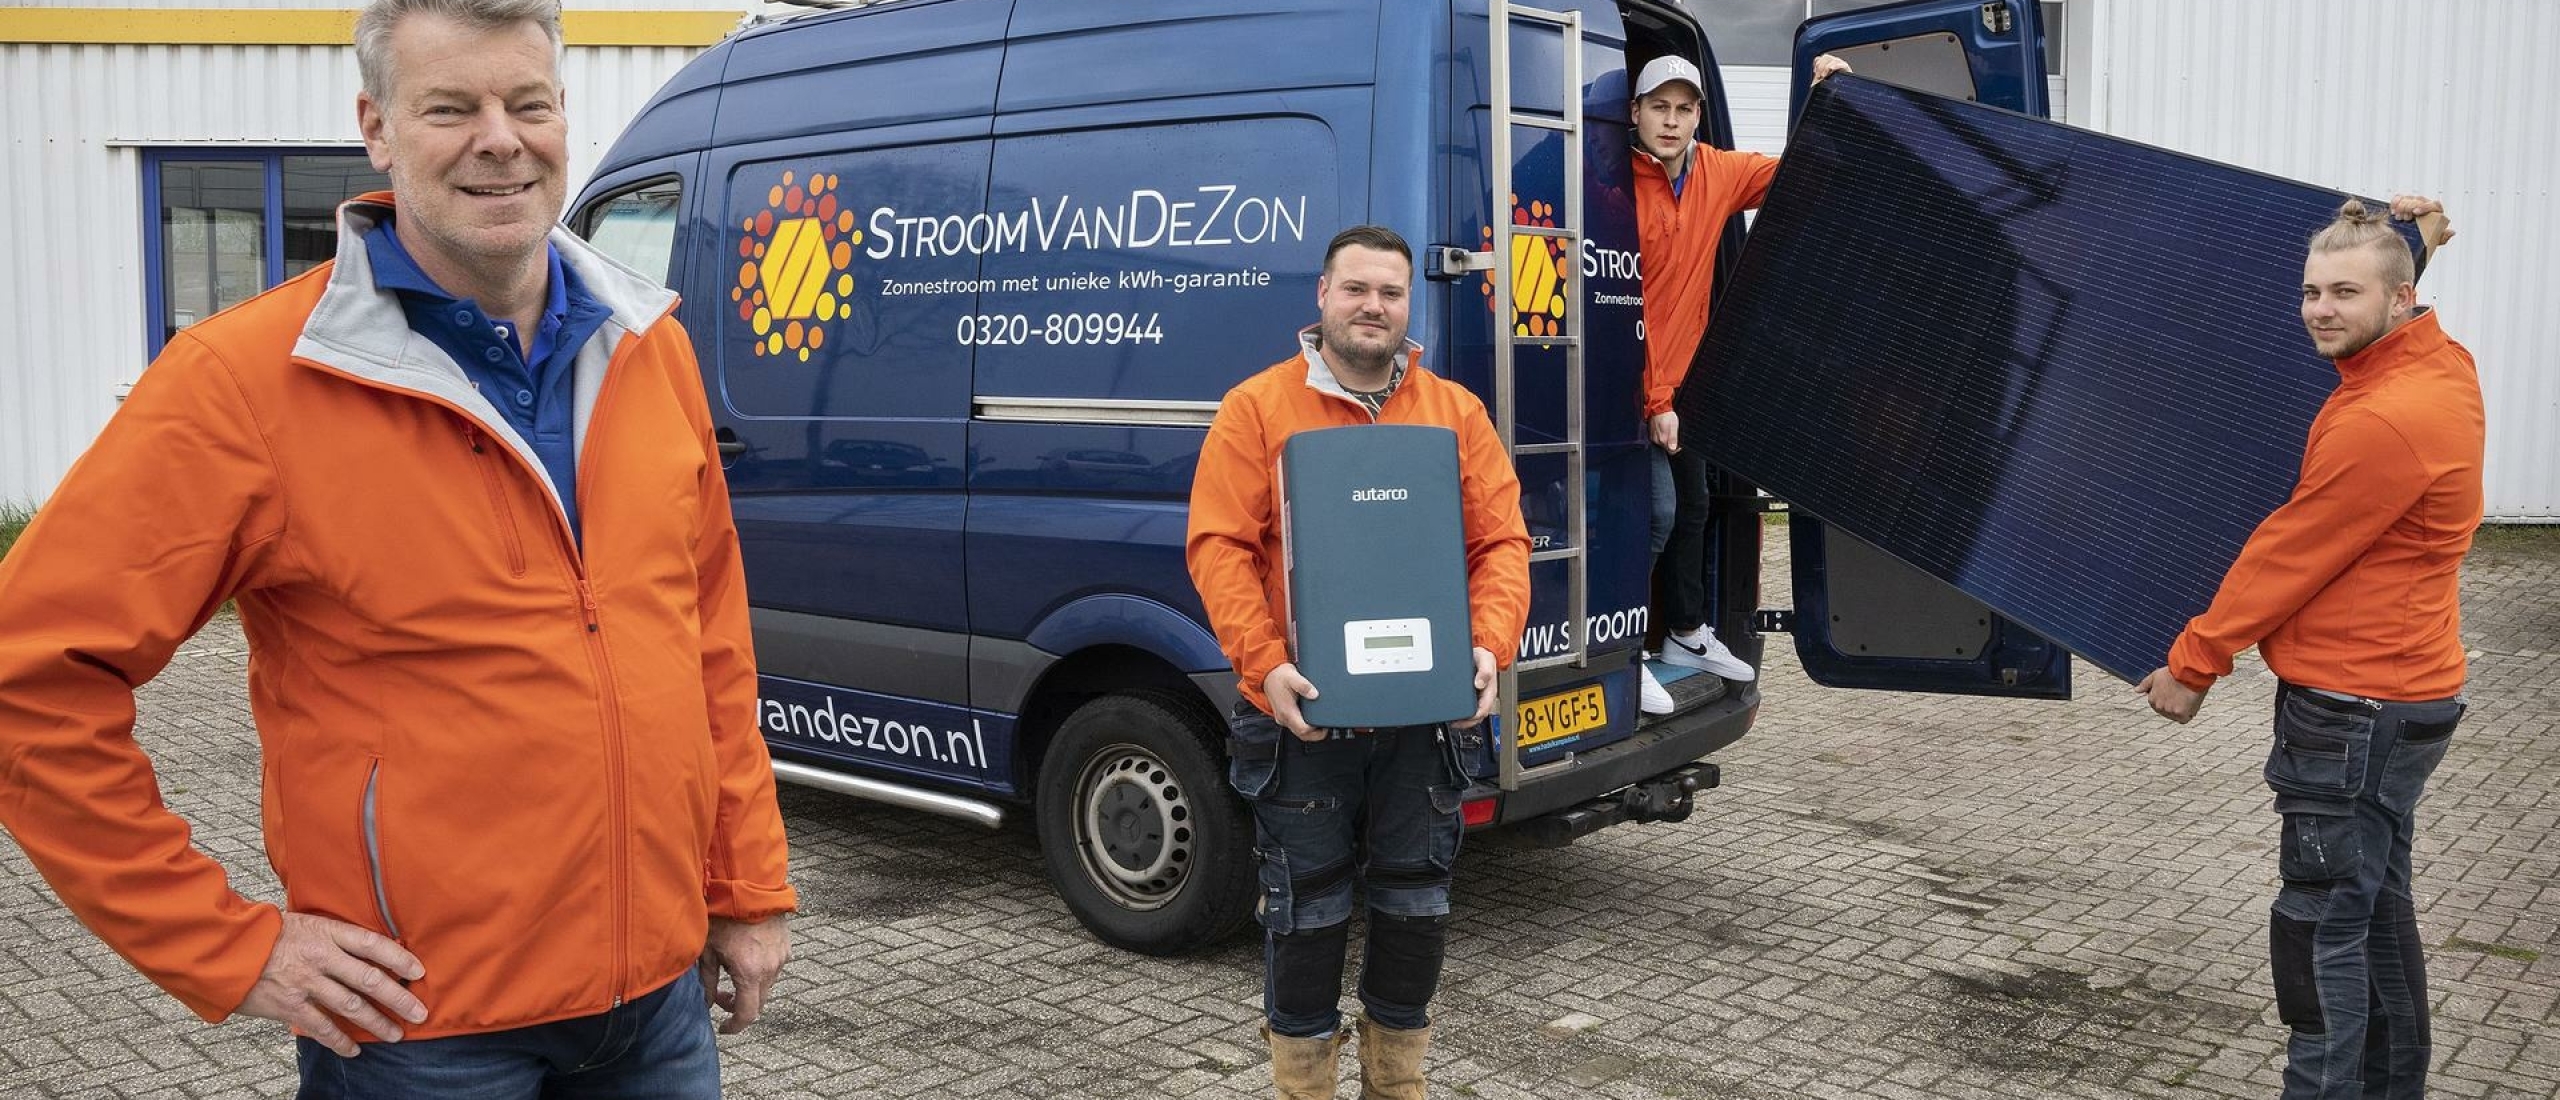 StroomVanDeZon uit Lelystad is het op één na beste zonnepanelenbedrijf in Nederland, aldus Duurzaam Thuis.